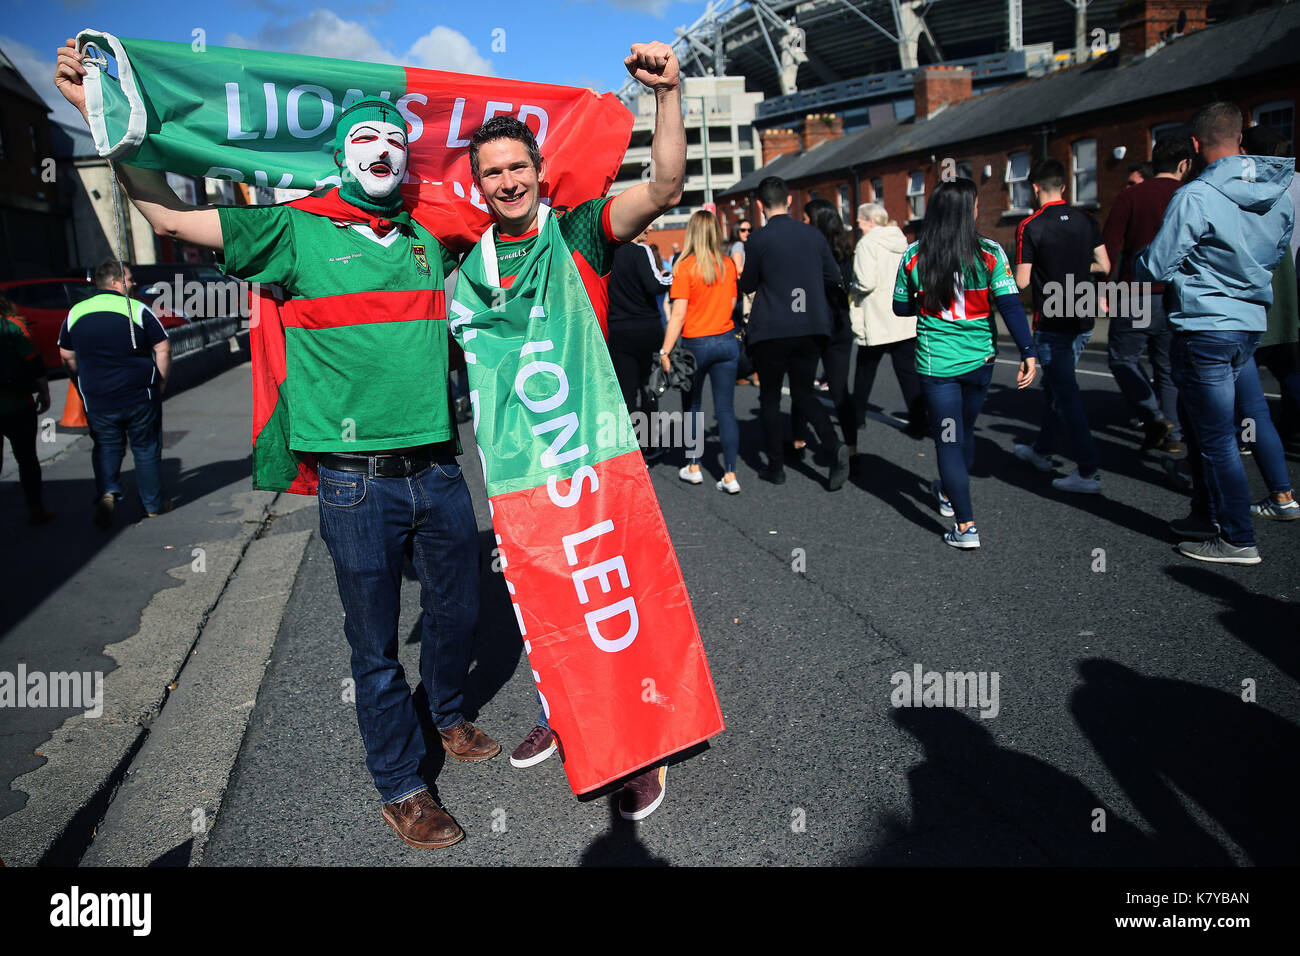 Mayo sostenitori su jones strada del tutto-Irlanda la finale del campionato di calcio tra Dublino e mayo a Croke Park di Dublino. Foto Stock